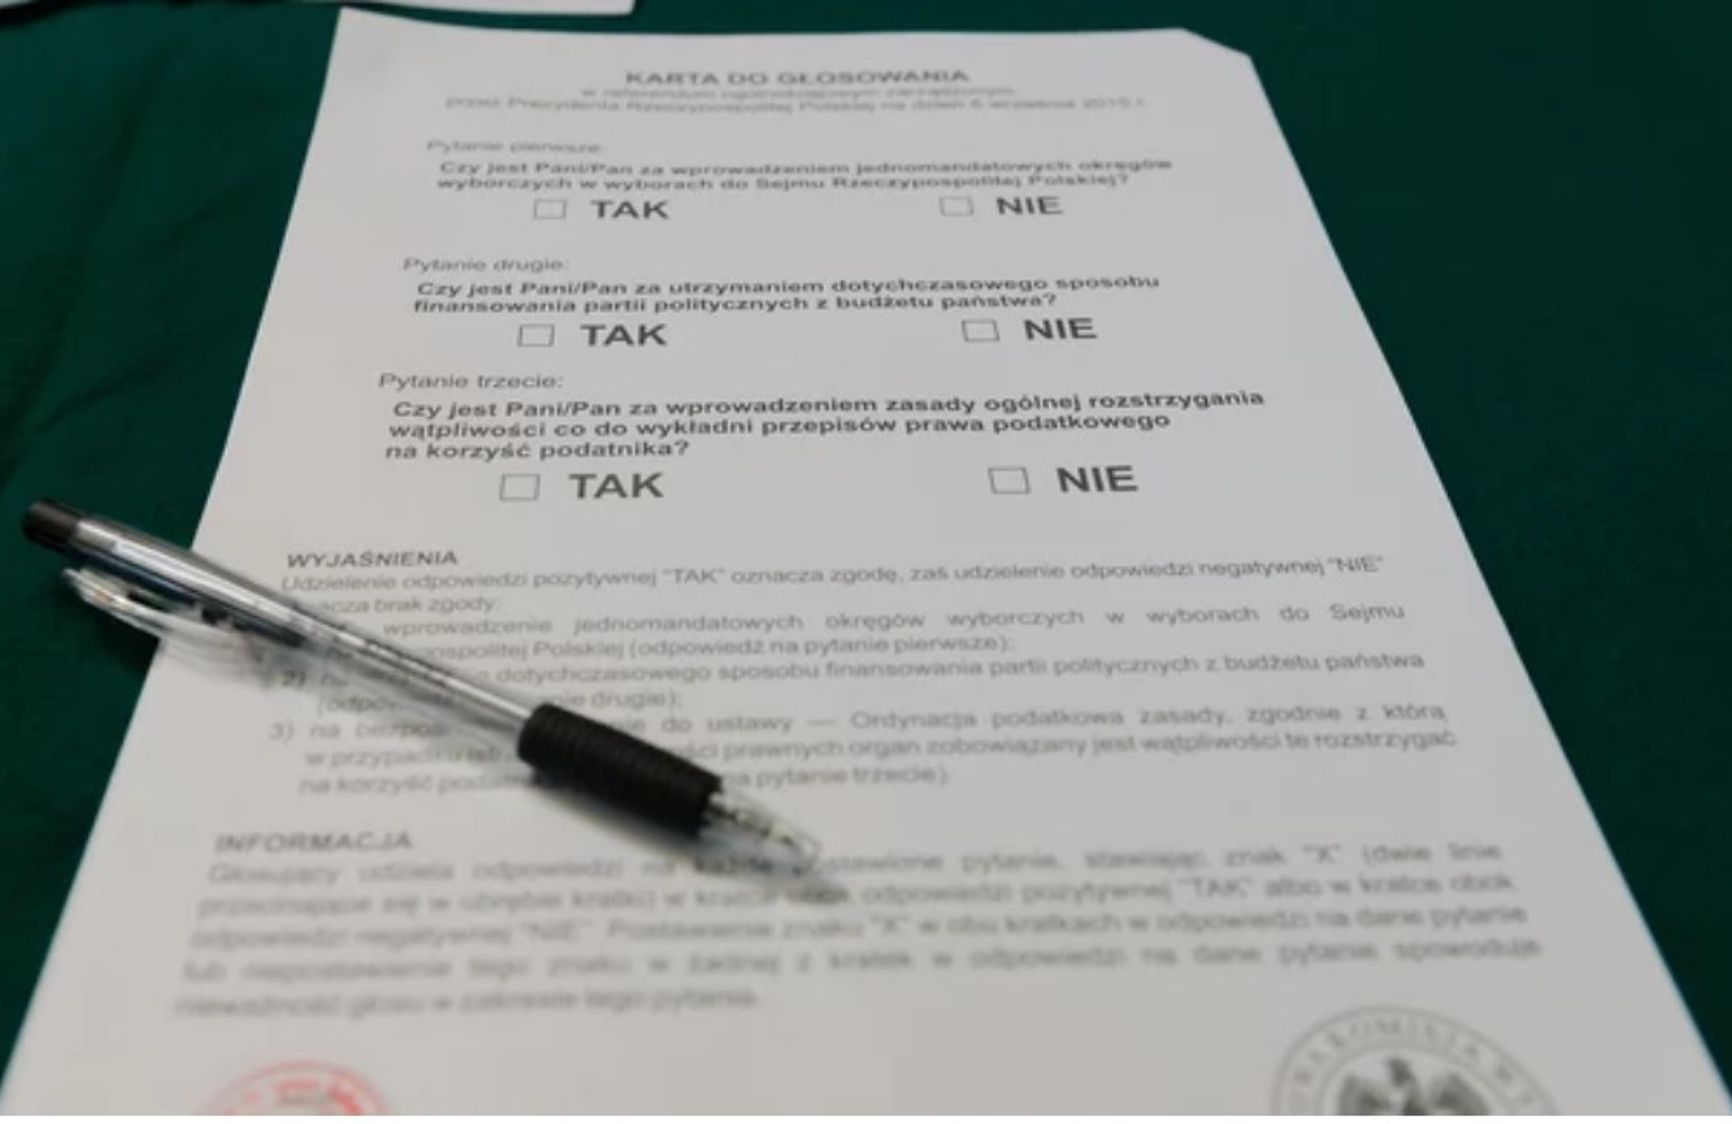 Фейк кремлевских СМИ: готовится референдум о присоединении Львовской области к Польше